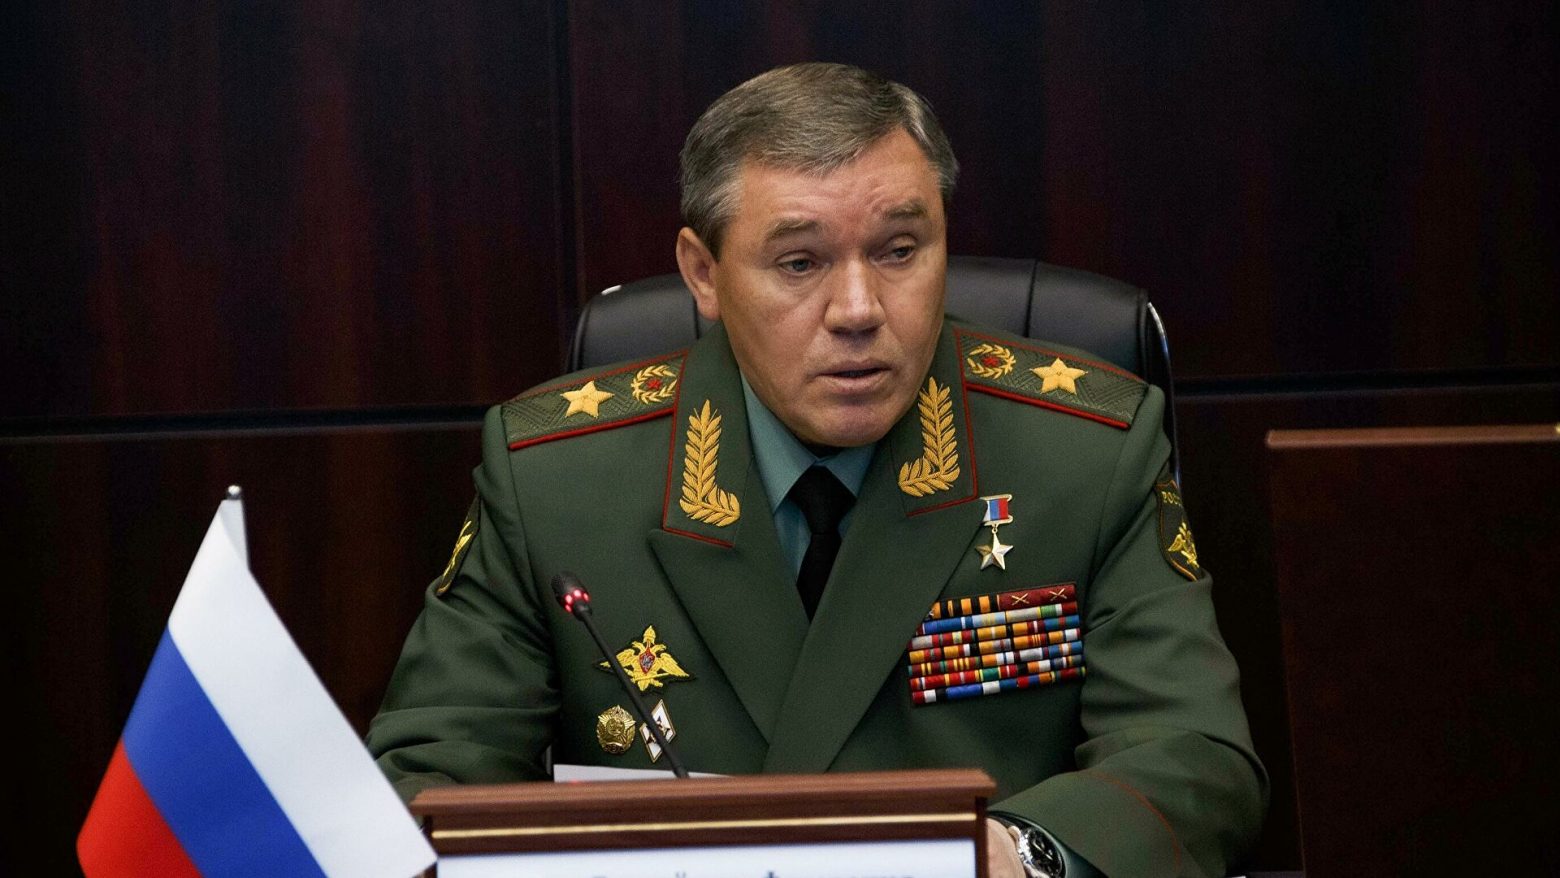 Πόλεμος στην Ουκρανία: Θρίλερ με τον Αρχηγό των Ενόπλων Δυνάμεων της Ρωσίας